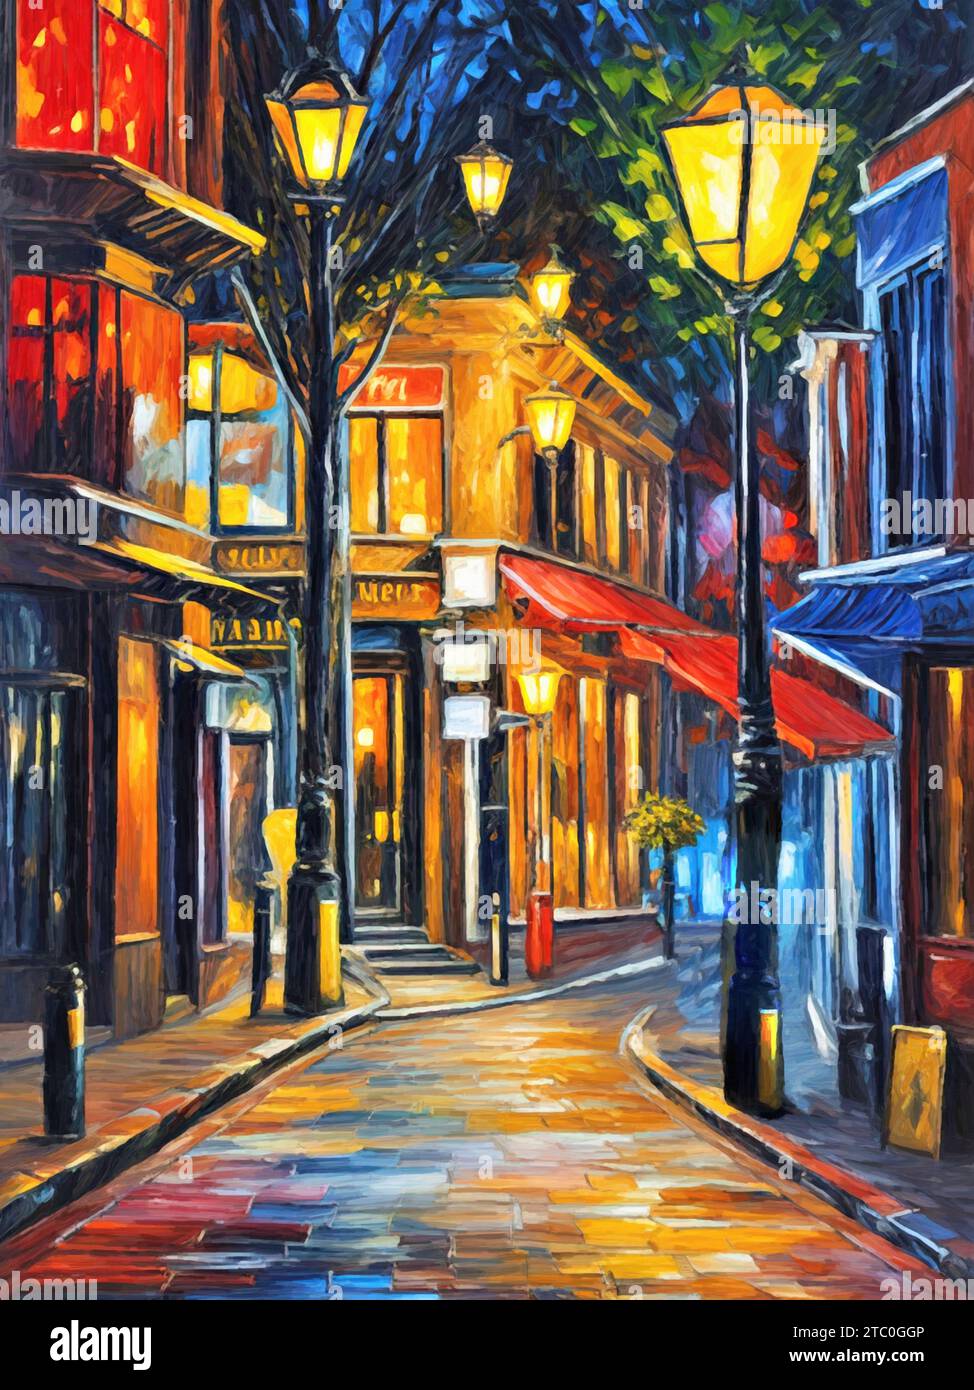 La vibración iluminada: La sinfonía de las calles de la ciudad por la pintura nocturna (óleo sobre lienzo). Foto de stock